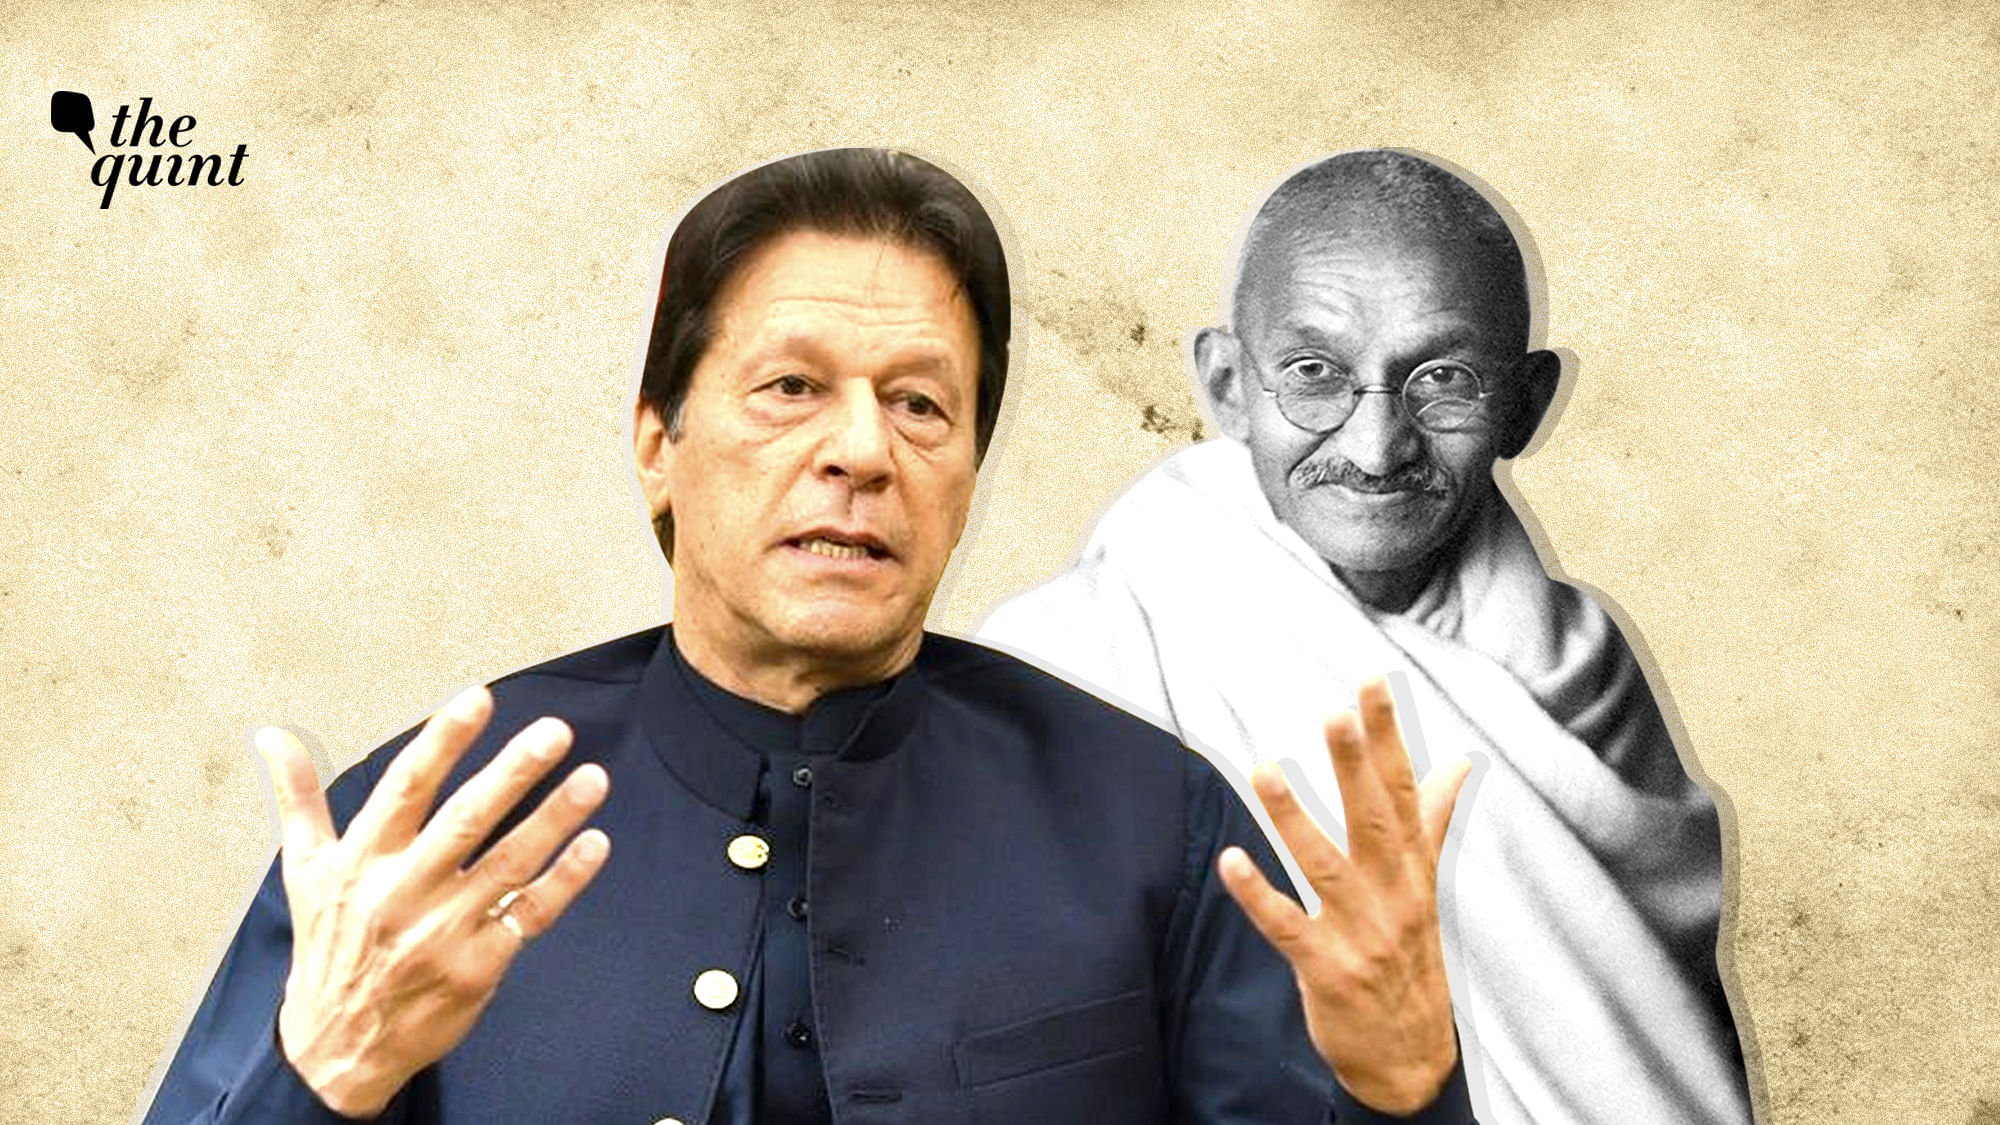 Image of Pakistan PM Imran Khan and Mahatma Gandhi used for representational purposes.